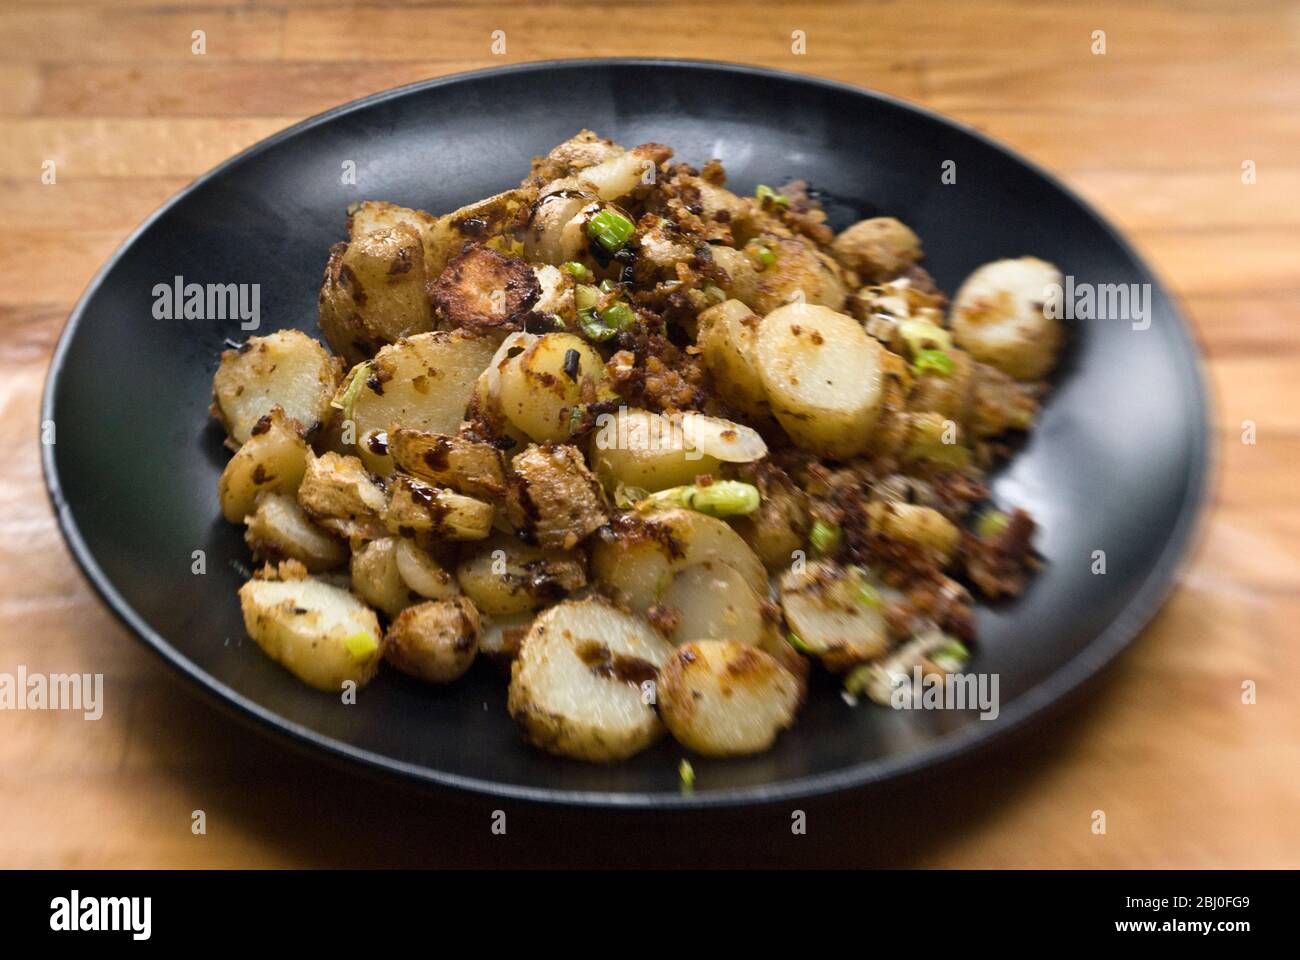 Piatto di patate fritte, saltati con acciughe, cipolle primaverili e pangrattato. - Foto Stock